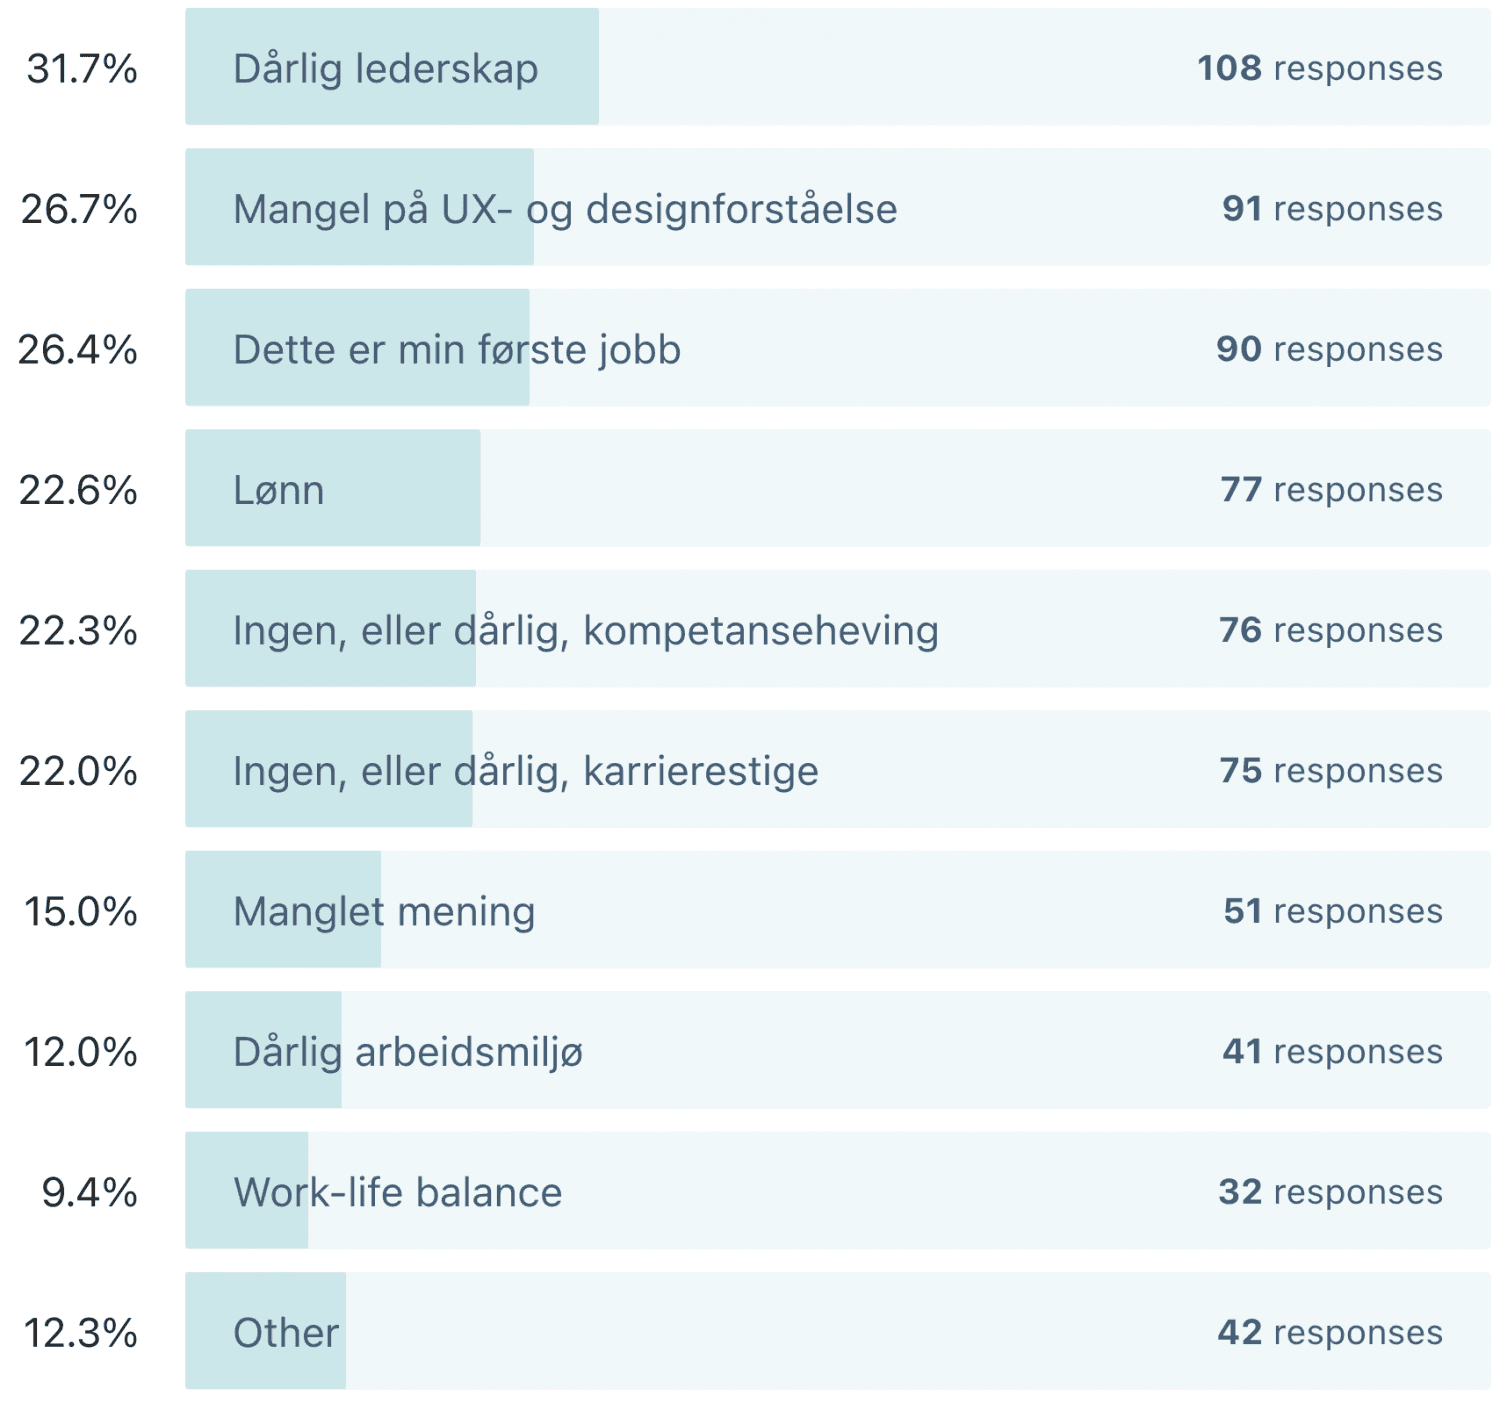 Årsak til jobbslutt: Dårlig lederskap: 31,7 %, Mangel på UX- og designforståelse: 26,7 %, Dette er min første jobb: 26,4 %, Lønn: 22,6 %, Ingen, eller dårlig, kompetanseheving: 22,3 %, Ingen, eller dårlig, karrierestige: 22 %, Manglet mening: 15 %, Dårlig arbeidsmiljø: 12 %, Work-life balance: 9,4 %, Other: 12,3 %